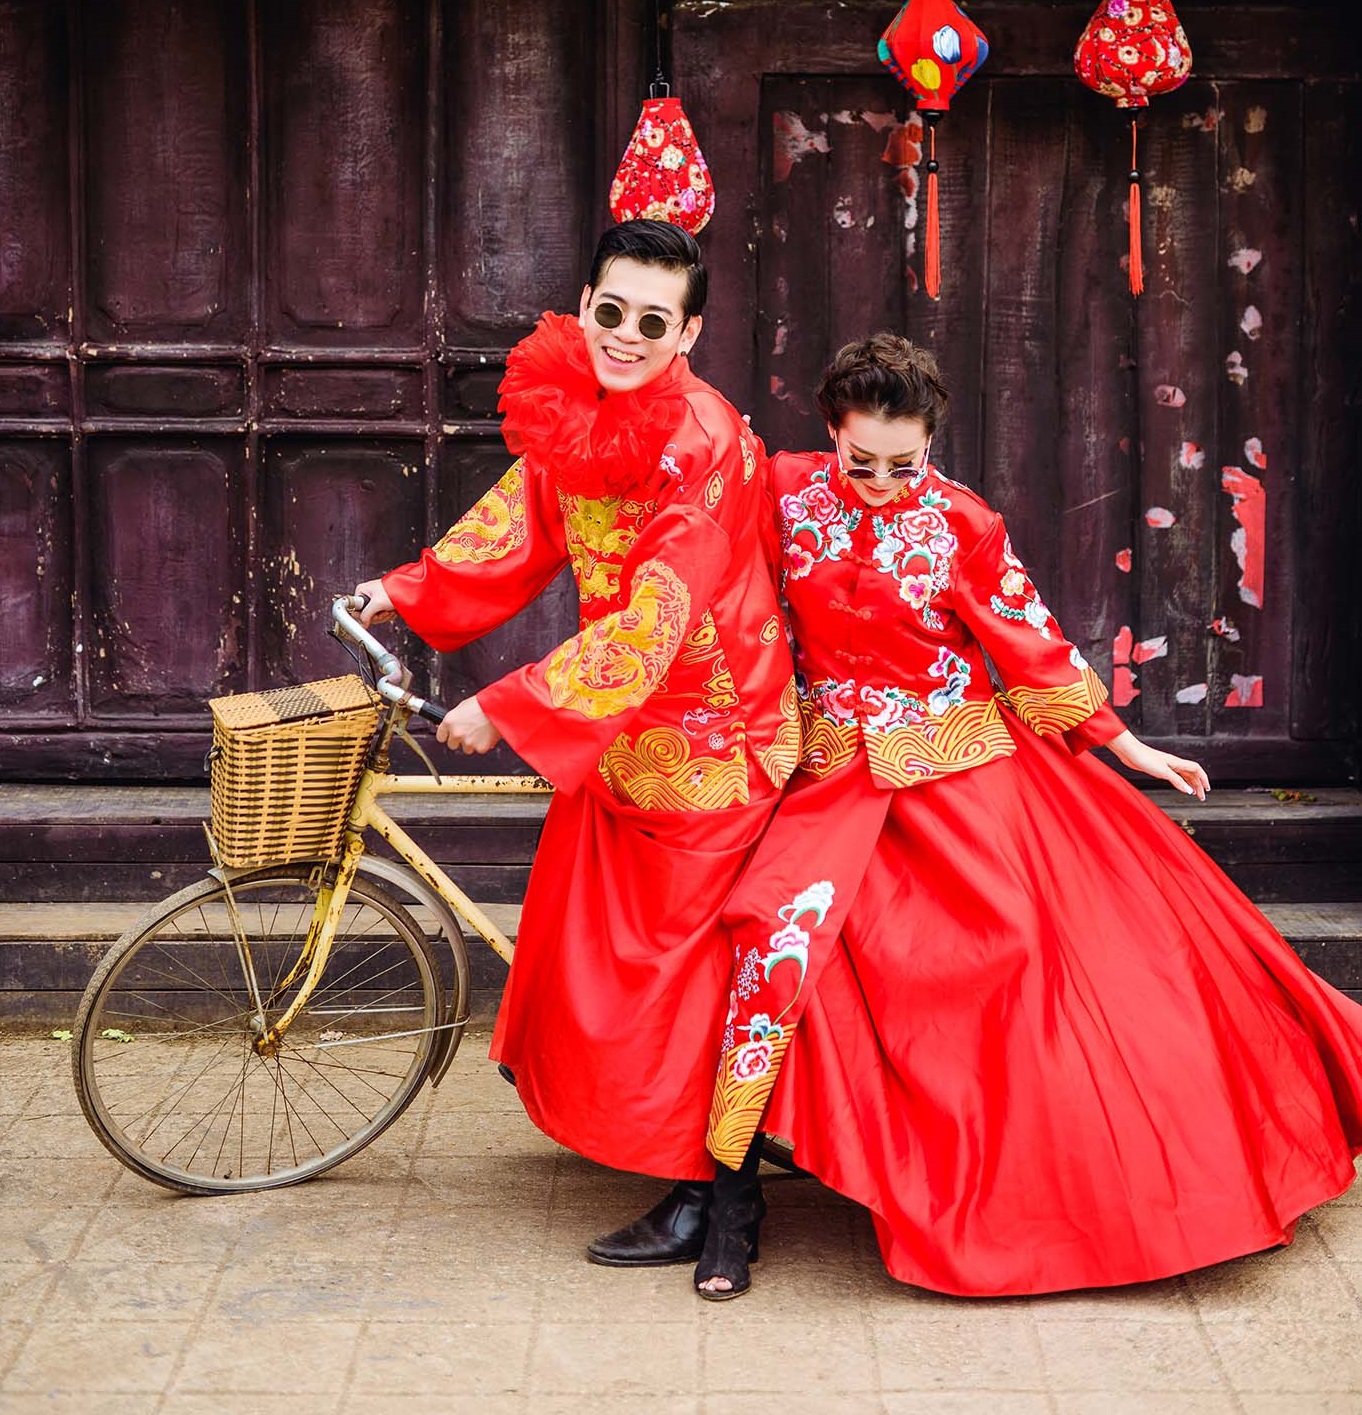 Chụp ảnh cưới kiểu Trung Quốc sẽ giúp cho bức ảnh cưới của bạn trở nên đặc biệt và độc đáo hơn bao giờ hết. Hãy xem bức ảnh để chiêm ngưỡng sự tinh tế và phong cách của nó.